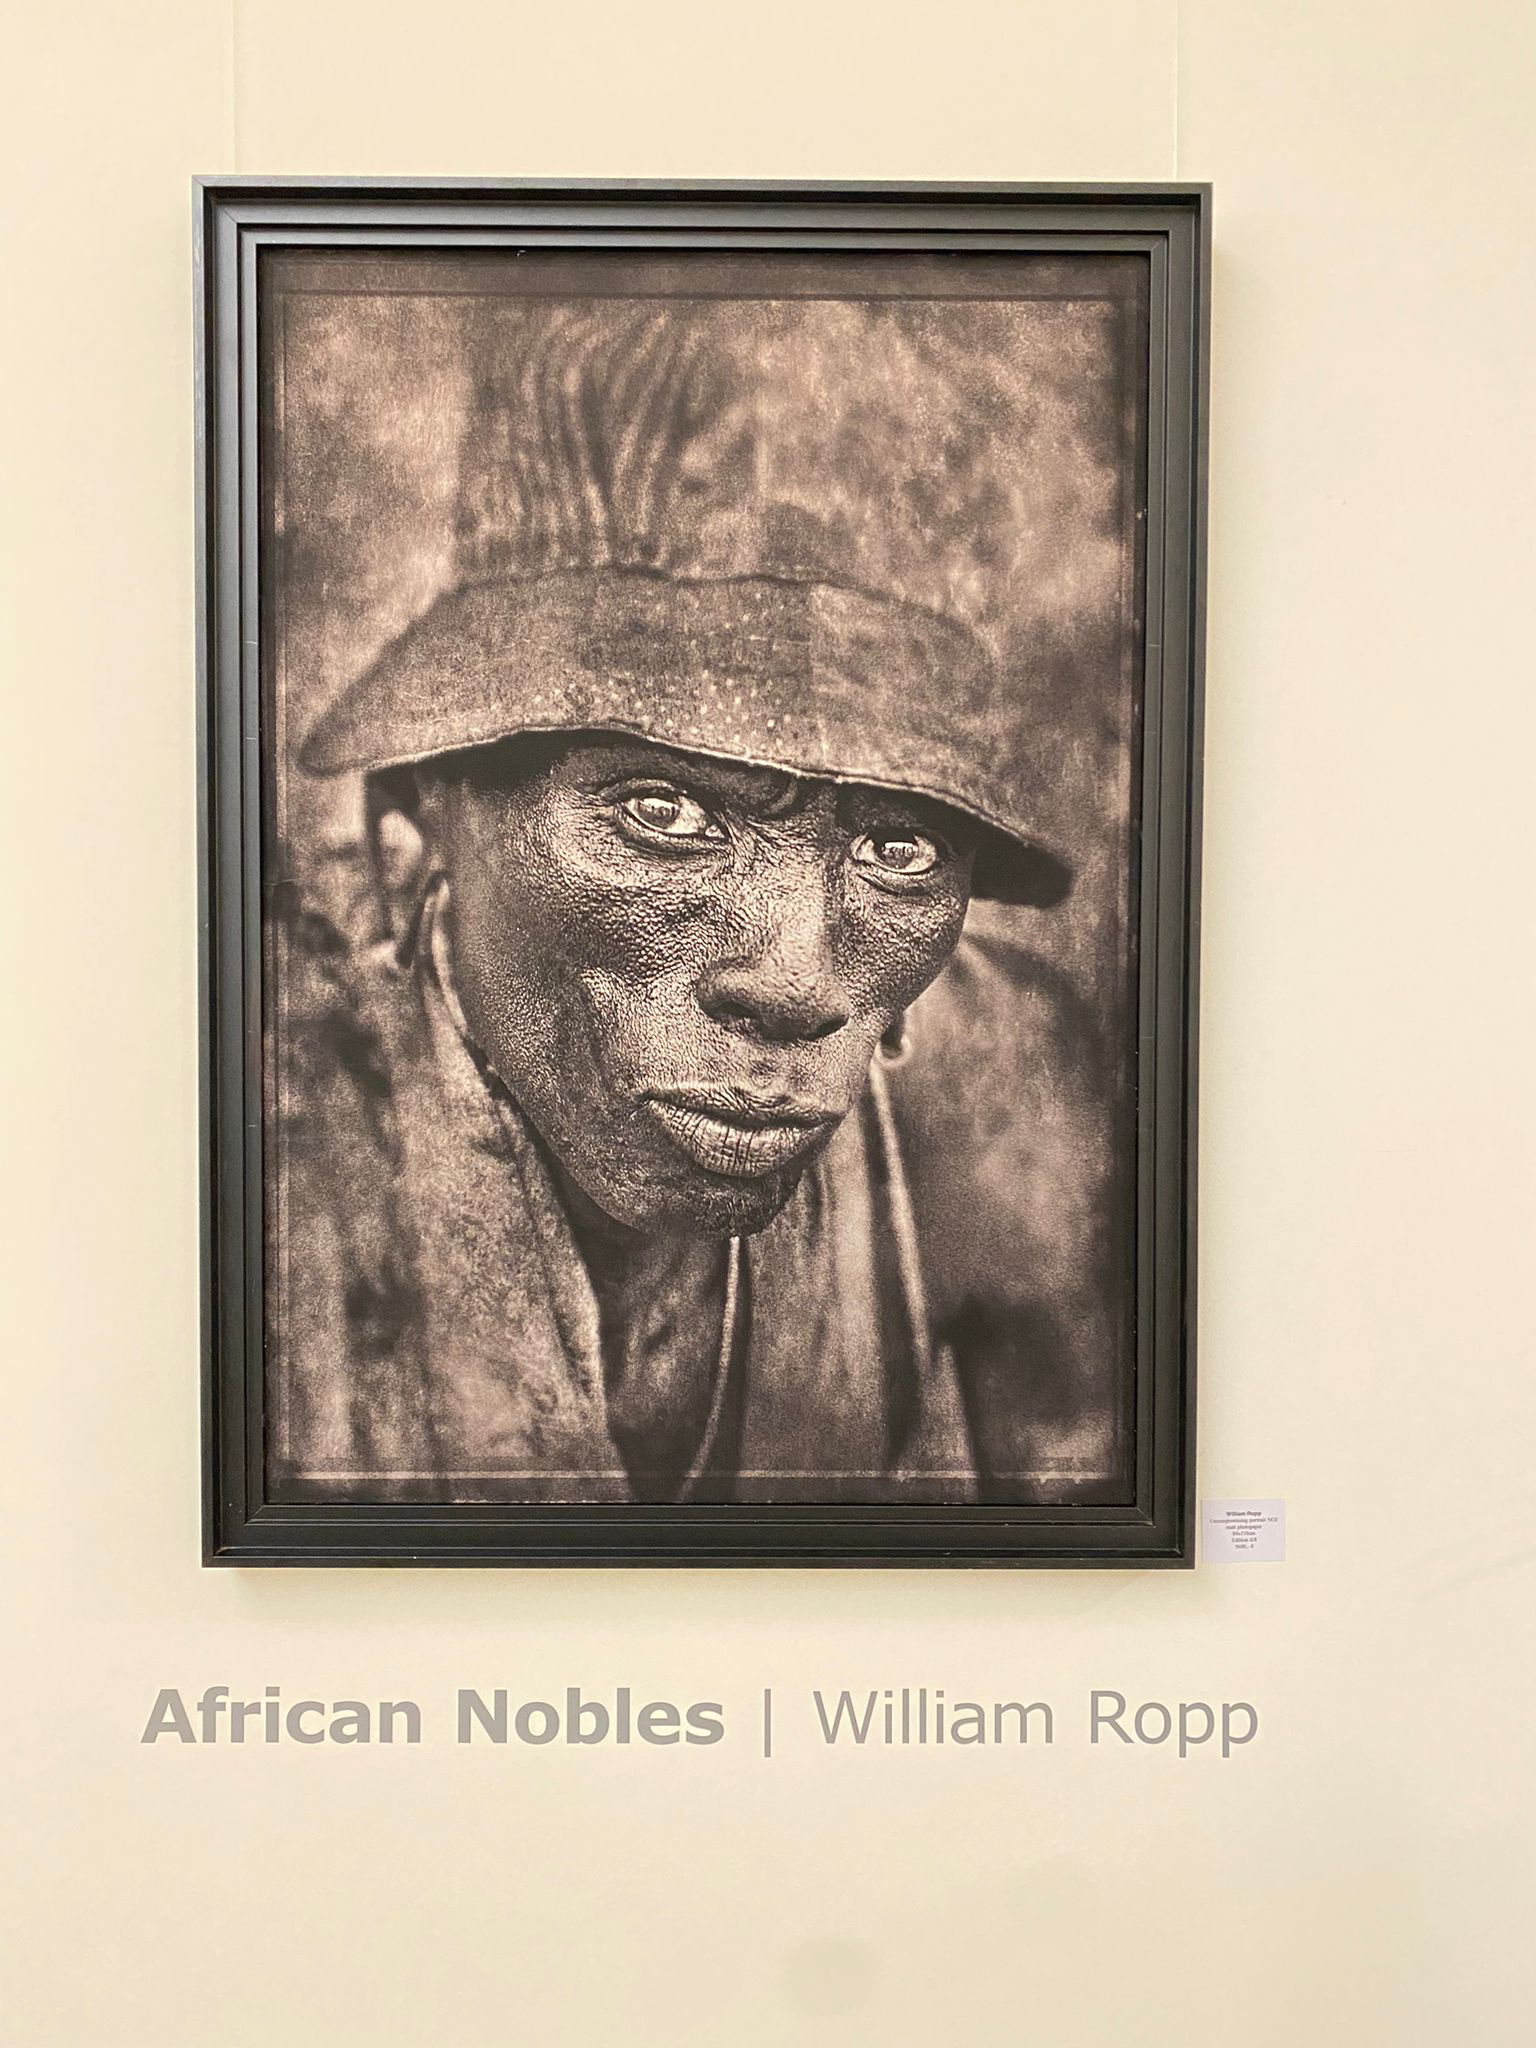 William Ropp: "African Nobles"